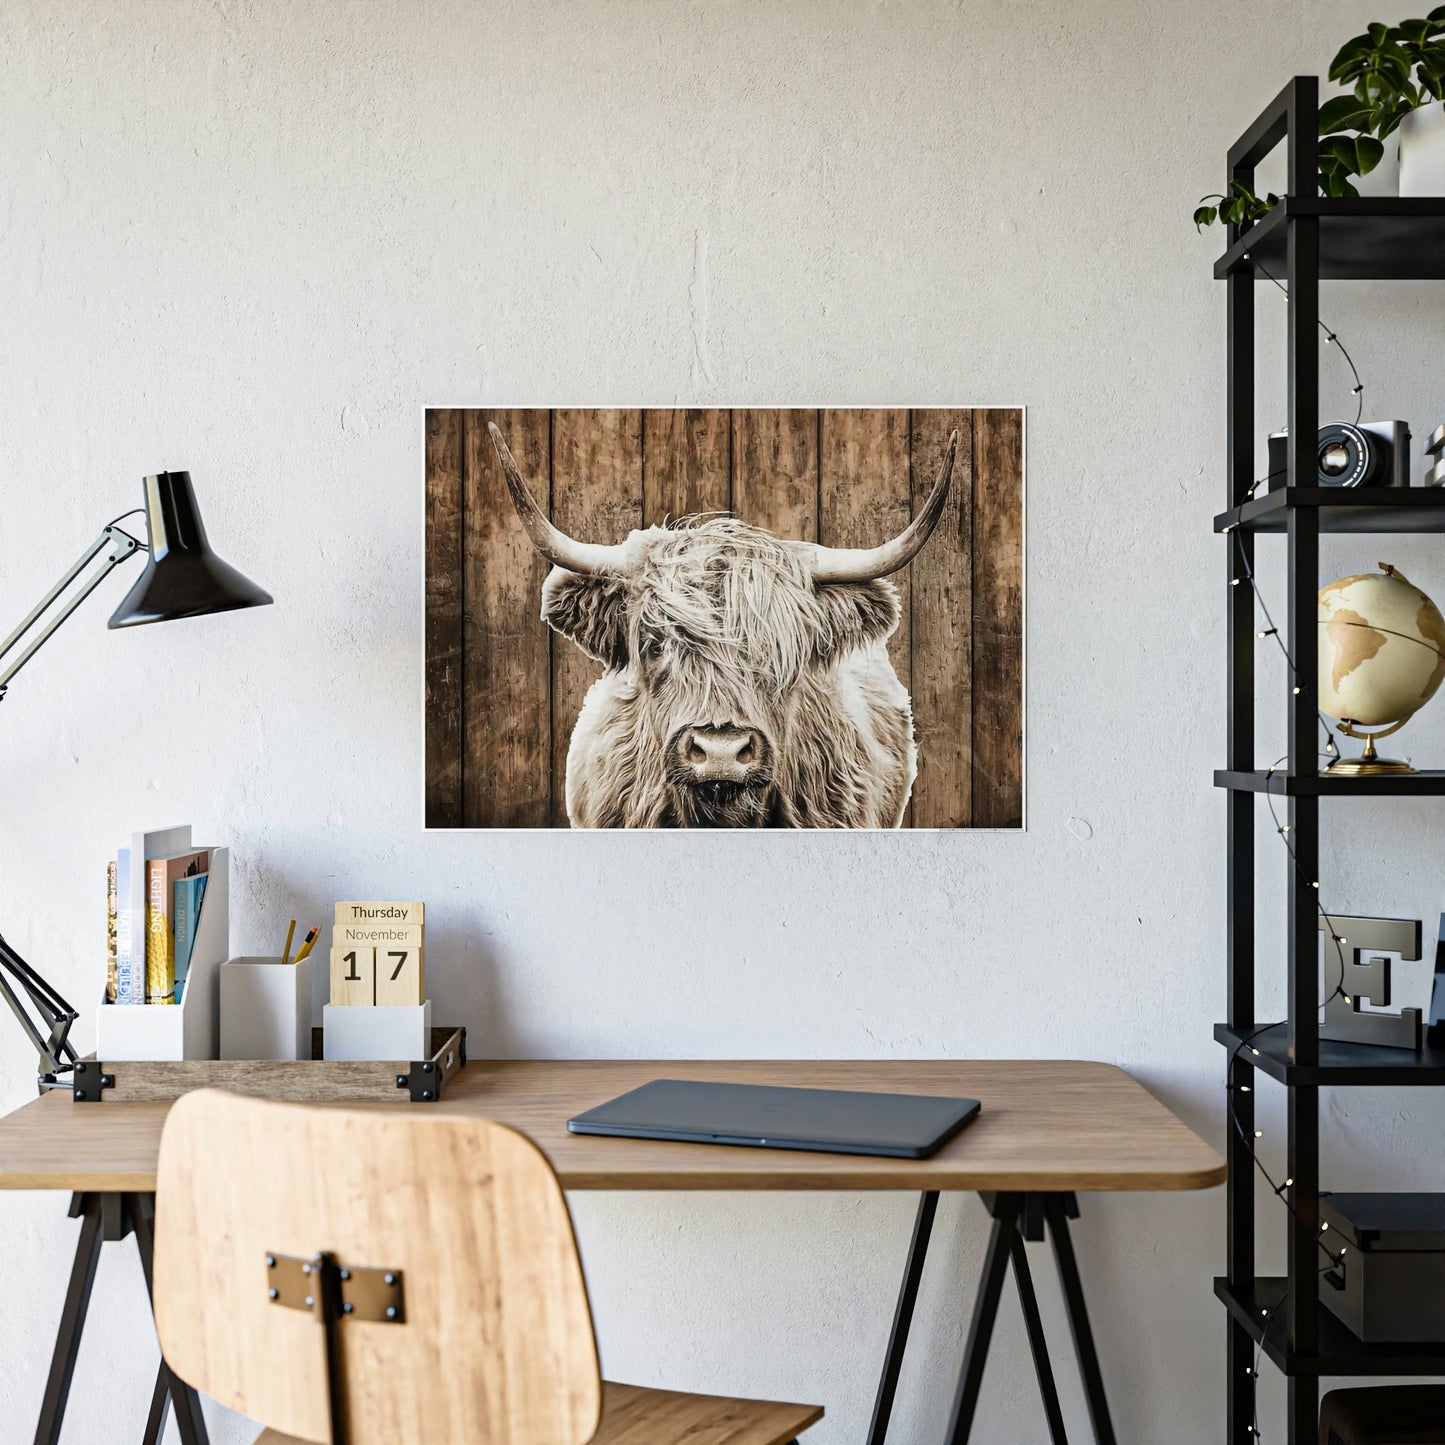 Highland Cow | Wild White Highland Cow | Canvas art — Pixoram